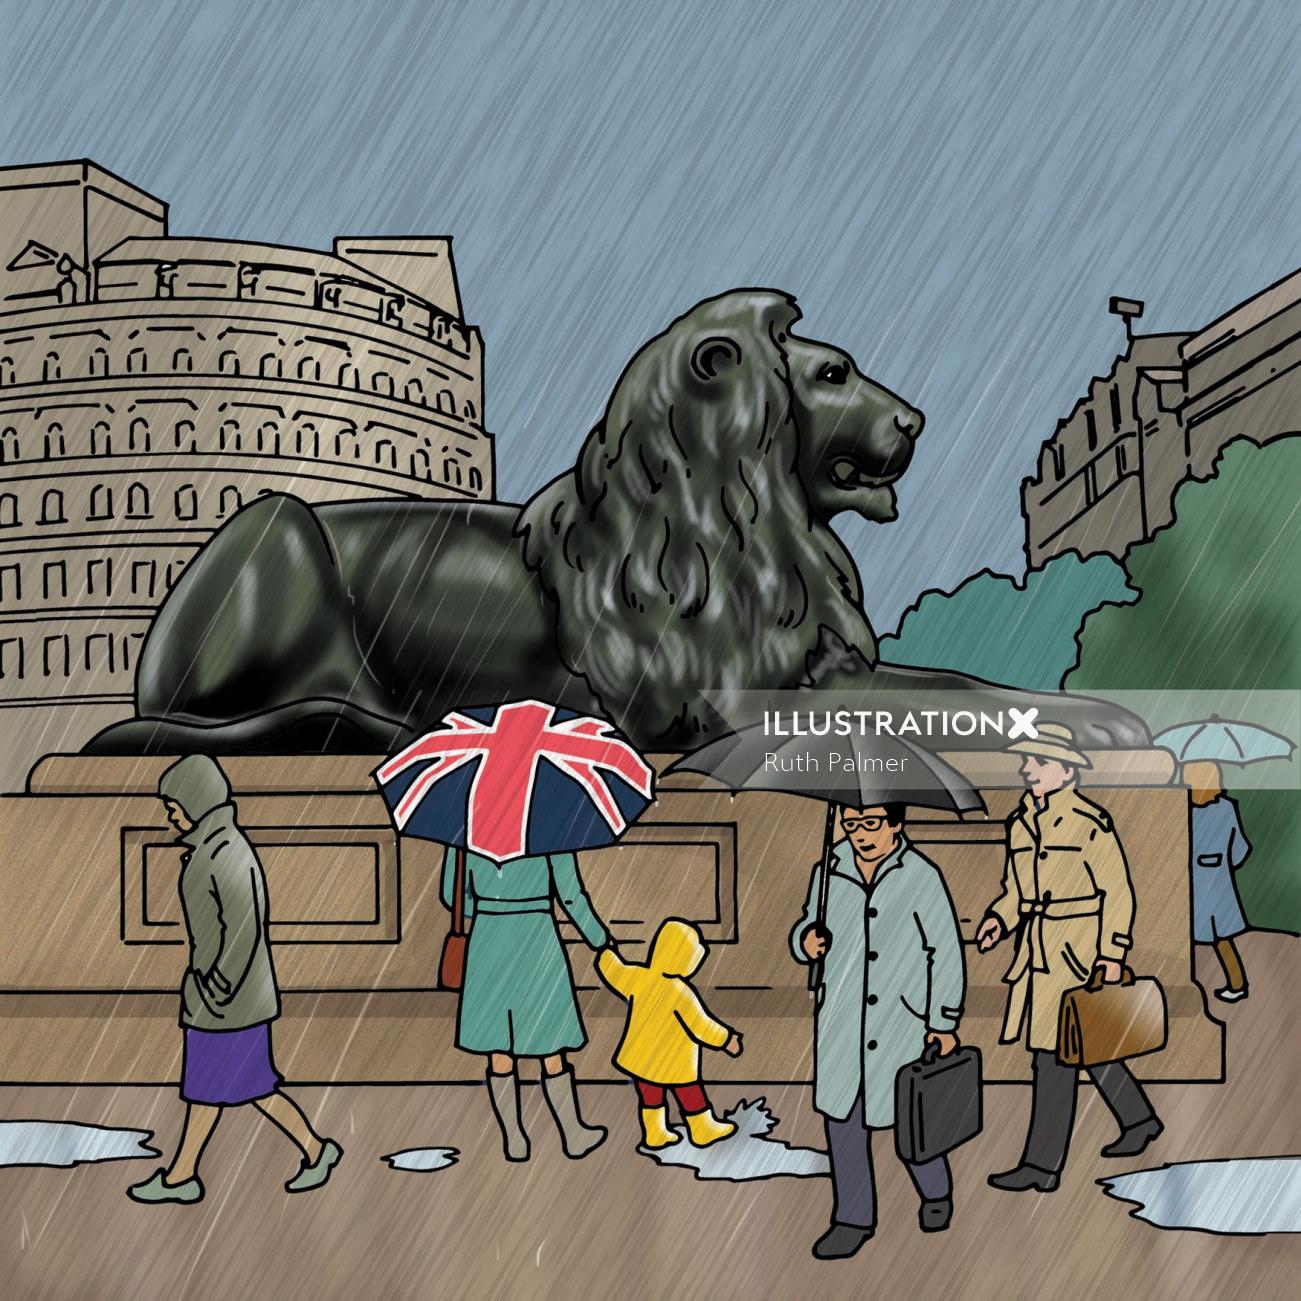 Estátua do leão sentada majestosamente ilustração de Ruth Palmer